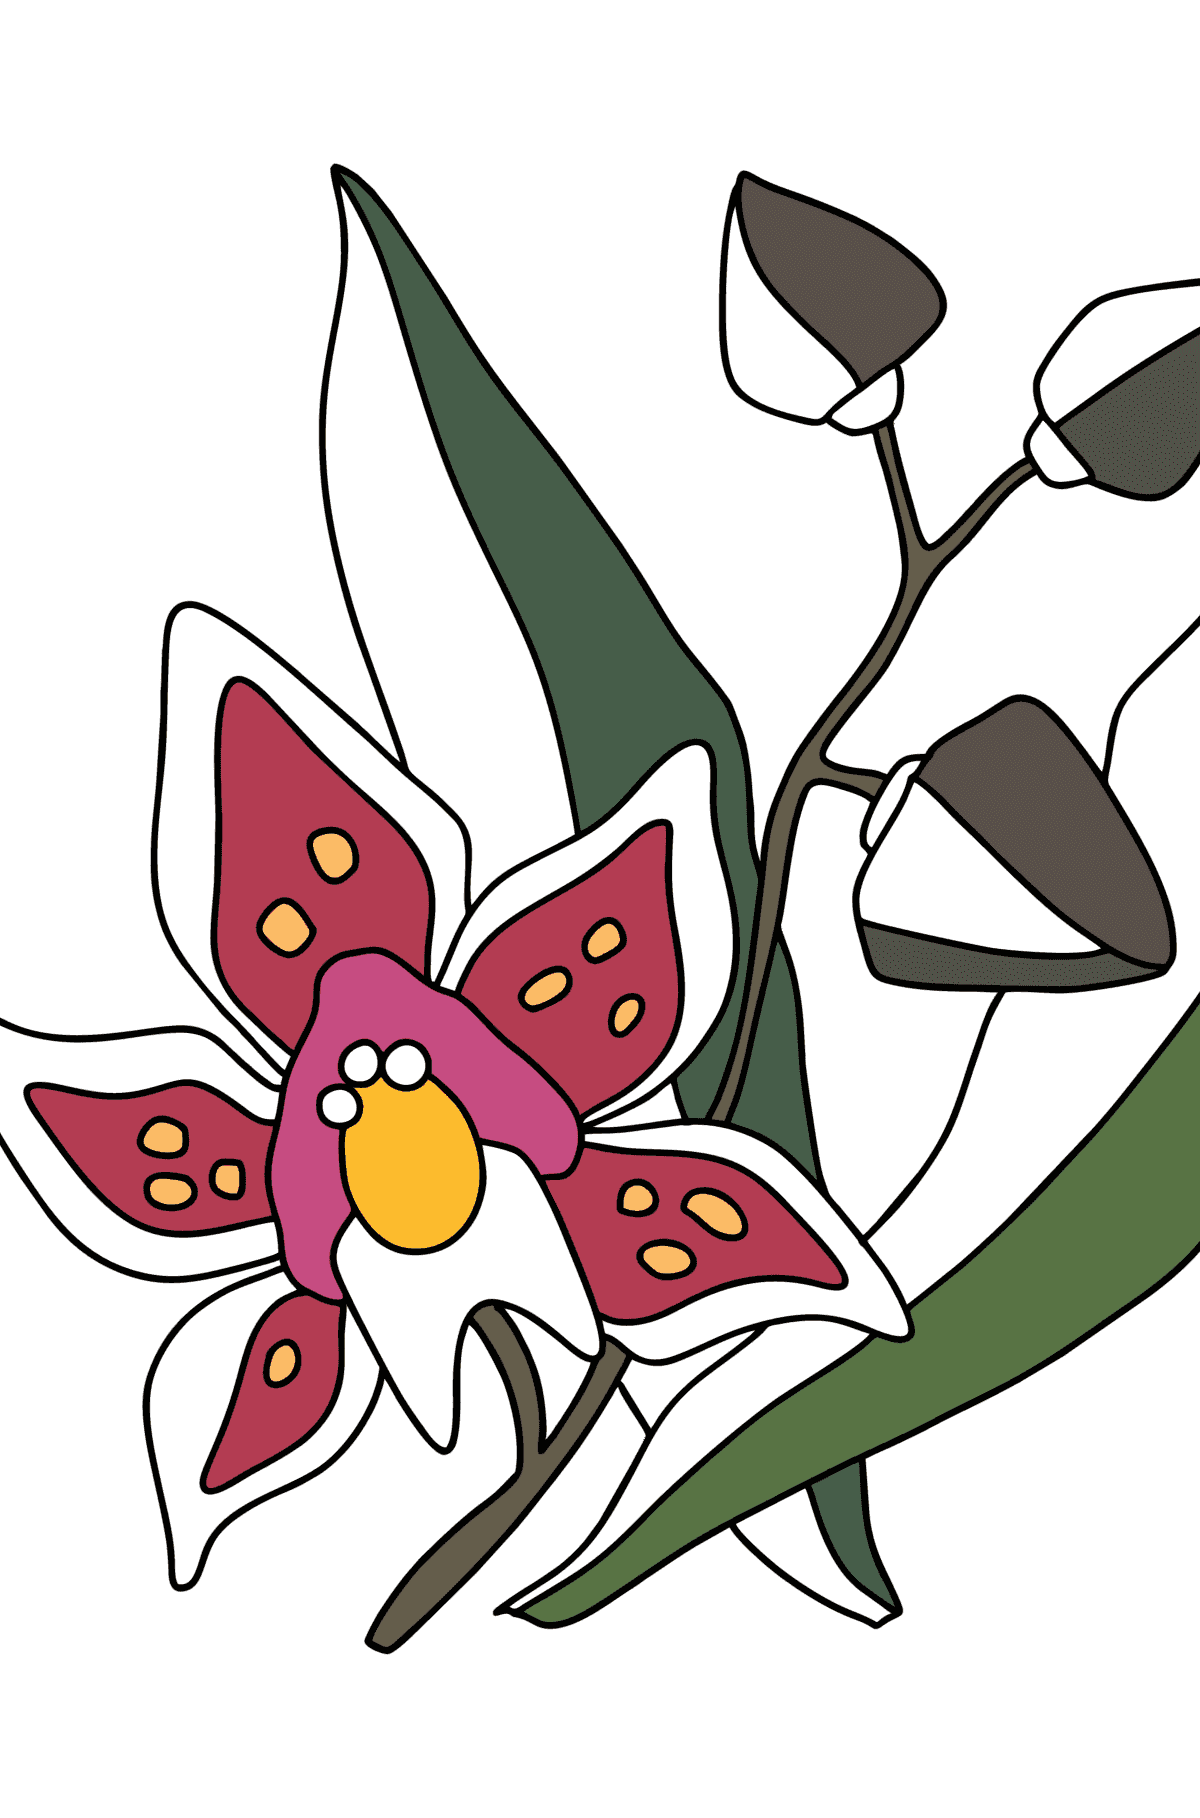 Målarbild Orkide - Målarbilder För barn